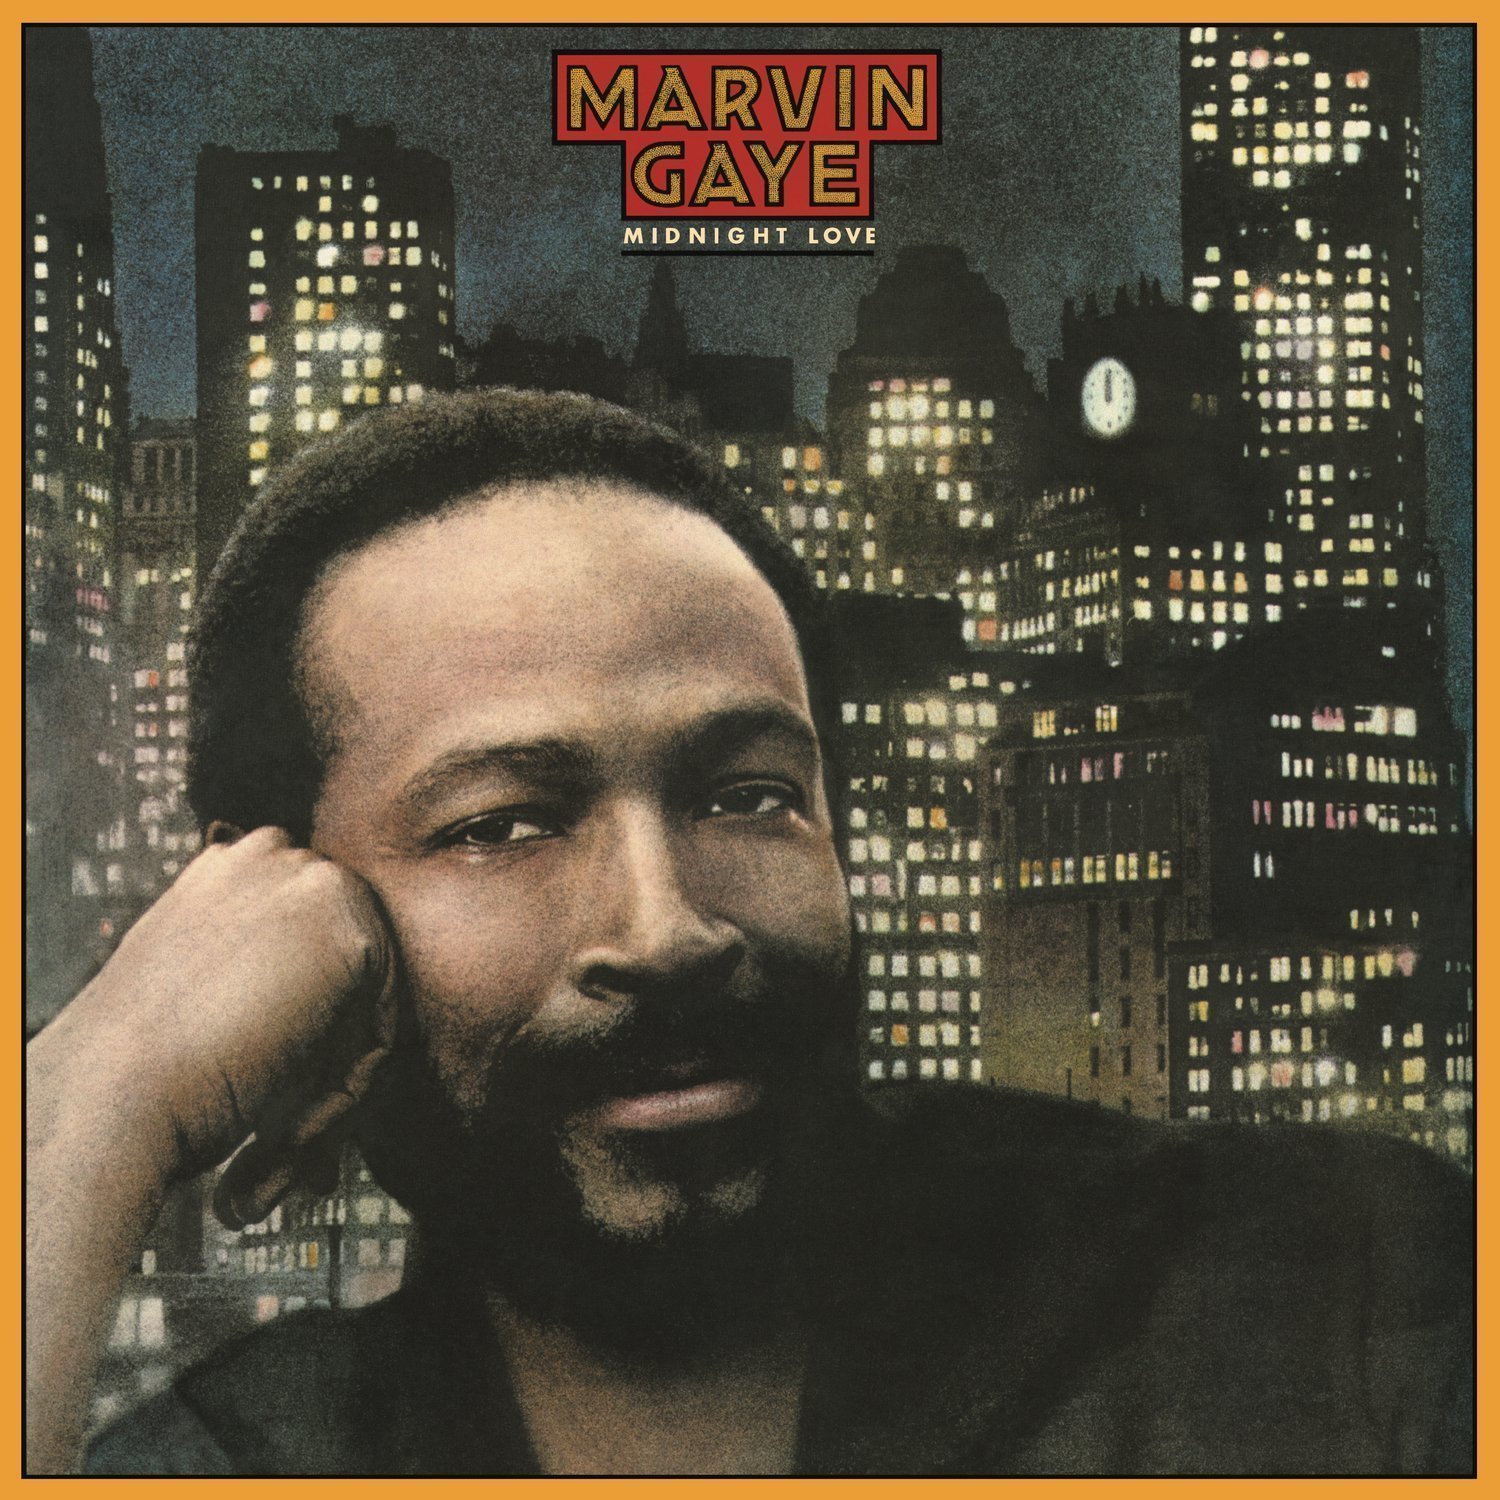 Vinyl Record Marvin Gaye Midnight Love (LP)